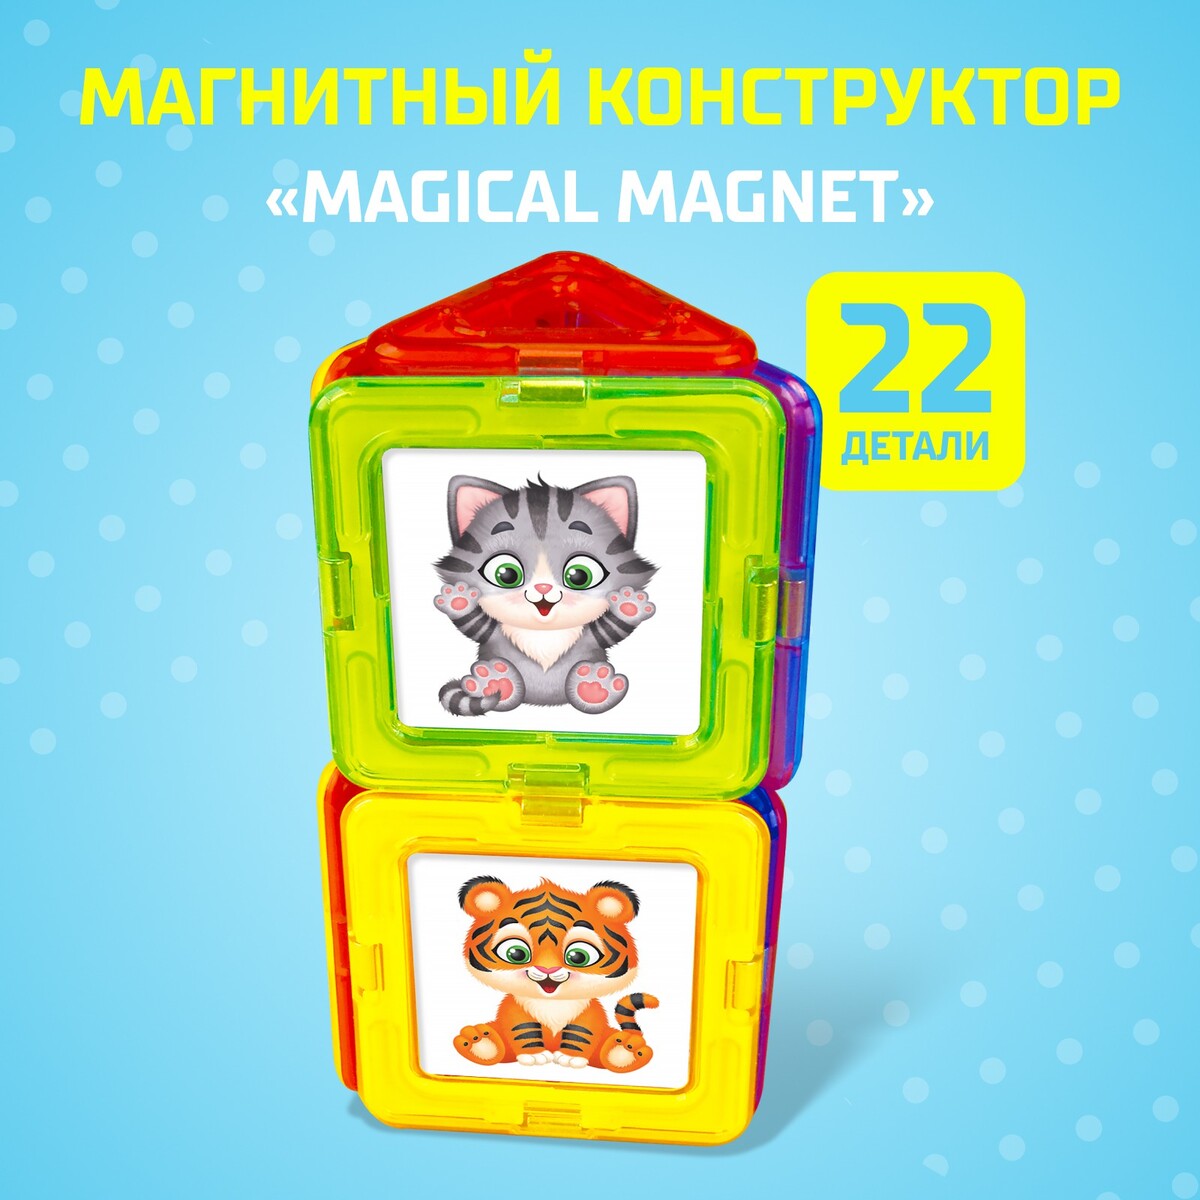 Магнитный конструктор magical magnet, 22 детали, детали матовые конструктор магнитный 42 детали